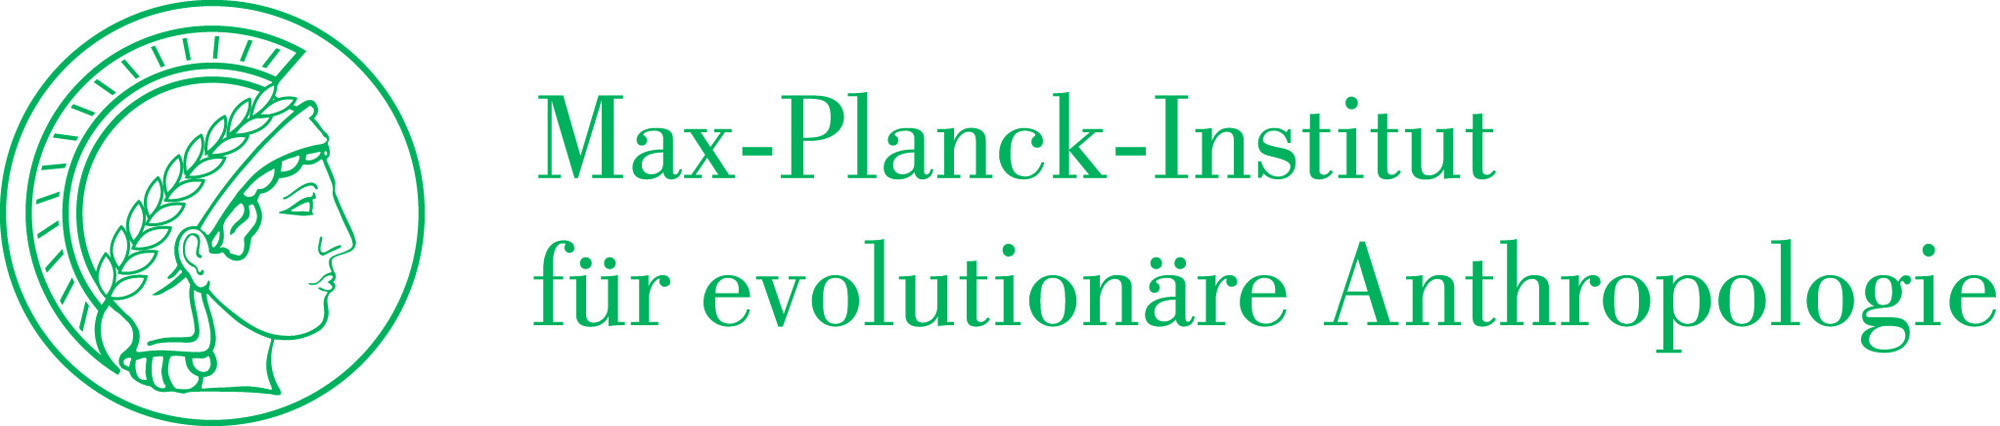 Logo: Max-Planck-Institut für evolutionäre Anthropologie